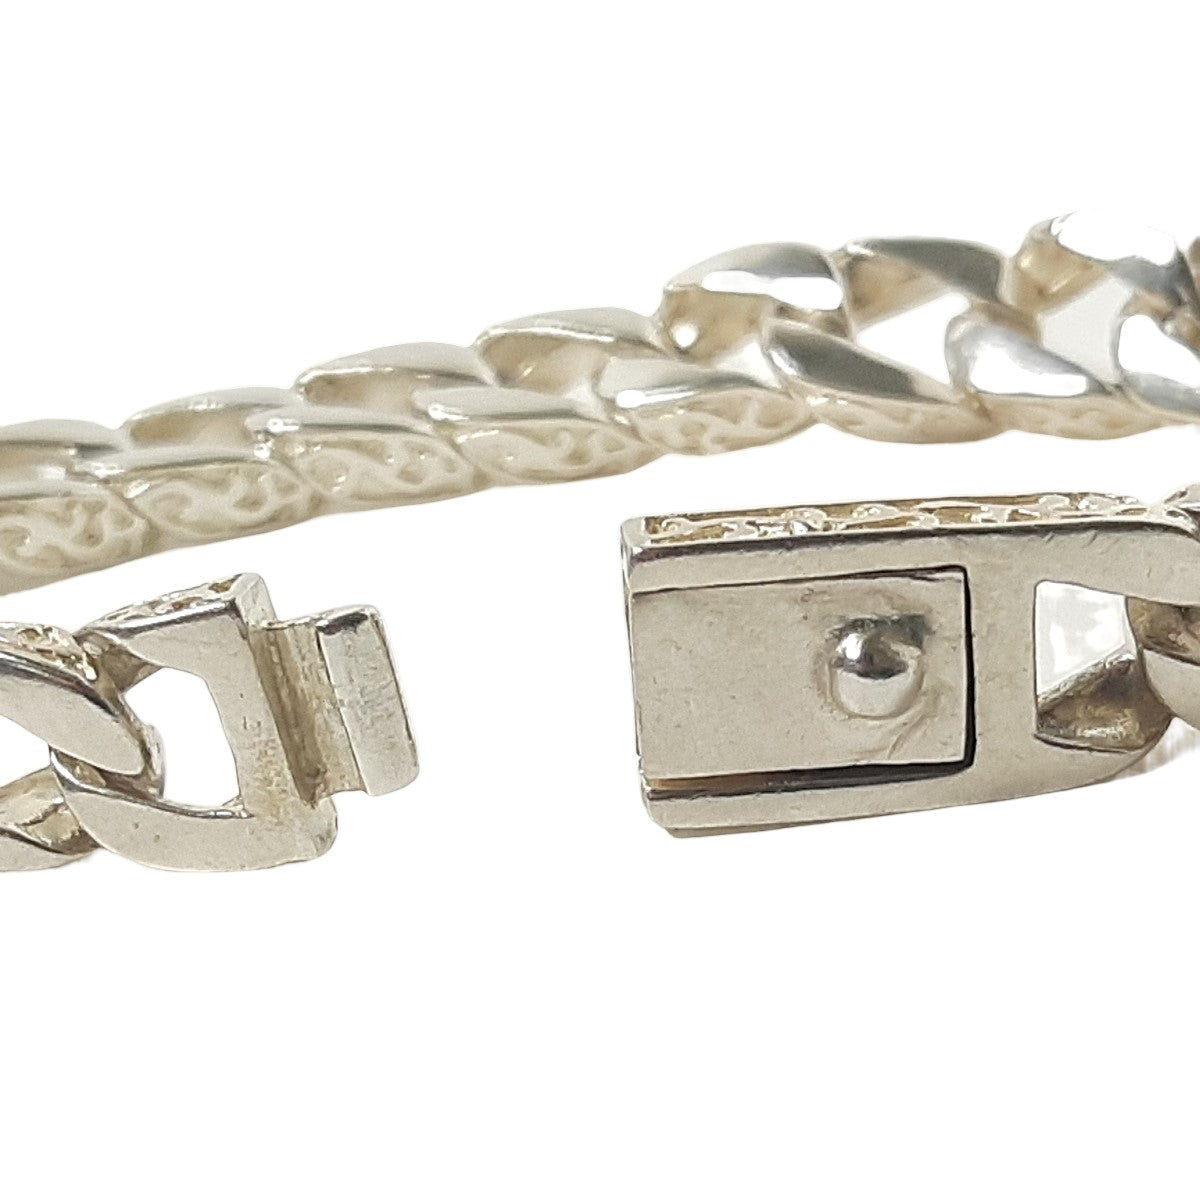 ヴィンテージ シルバー925 キューバンチェーン ブレスレット 42g / Vintage Sterling Silver Cuban Chain Bracelet